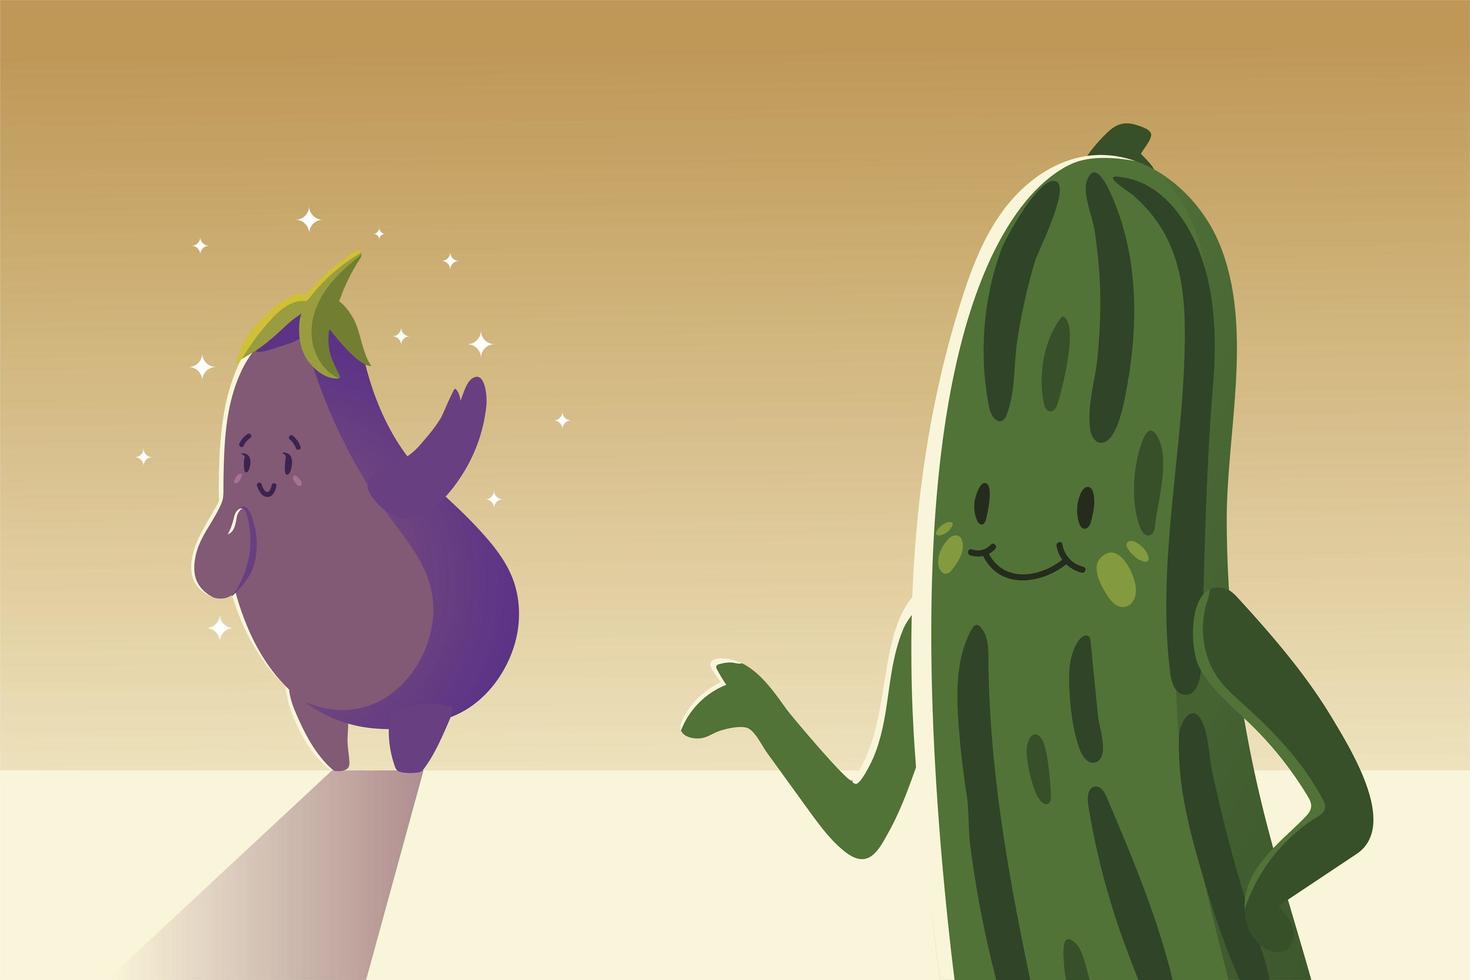 verdure kawaii carine melanzane e cetrioli in stile cartone animato vettore